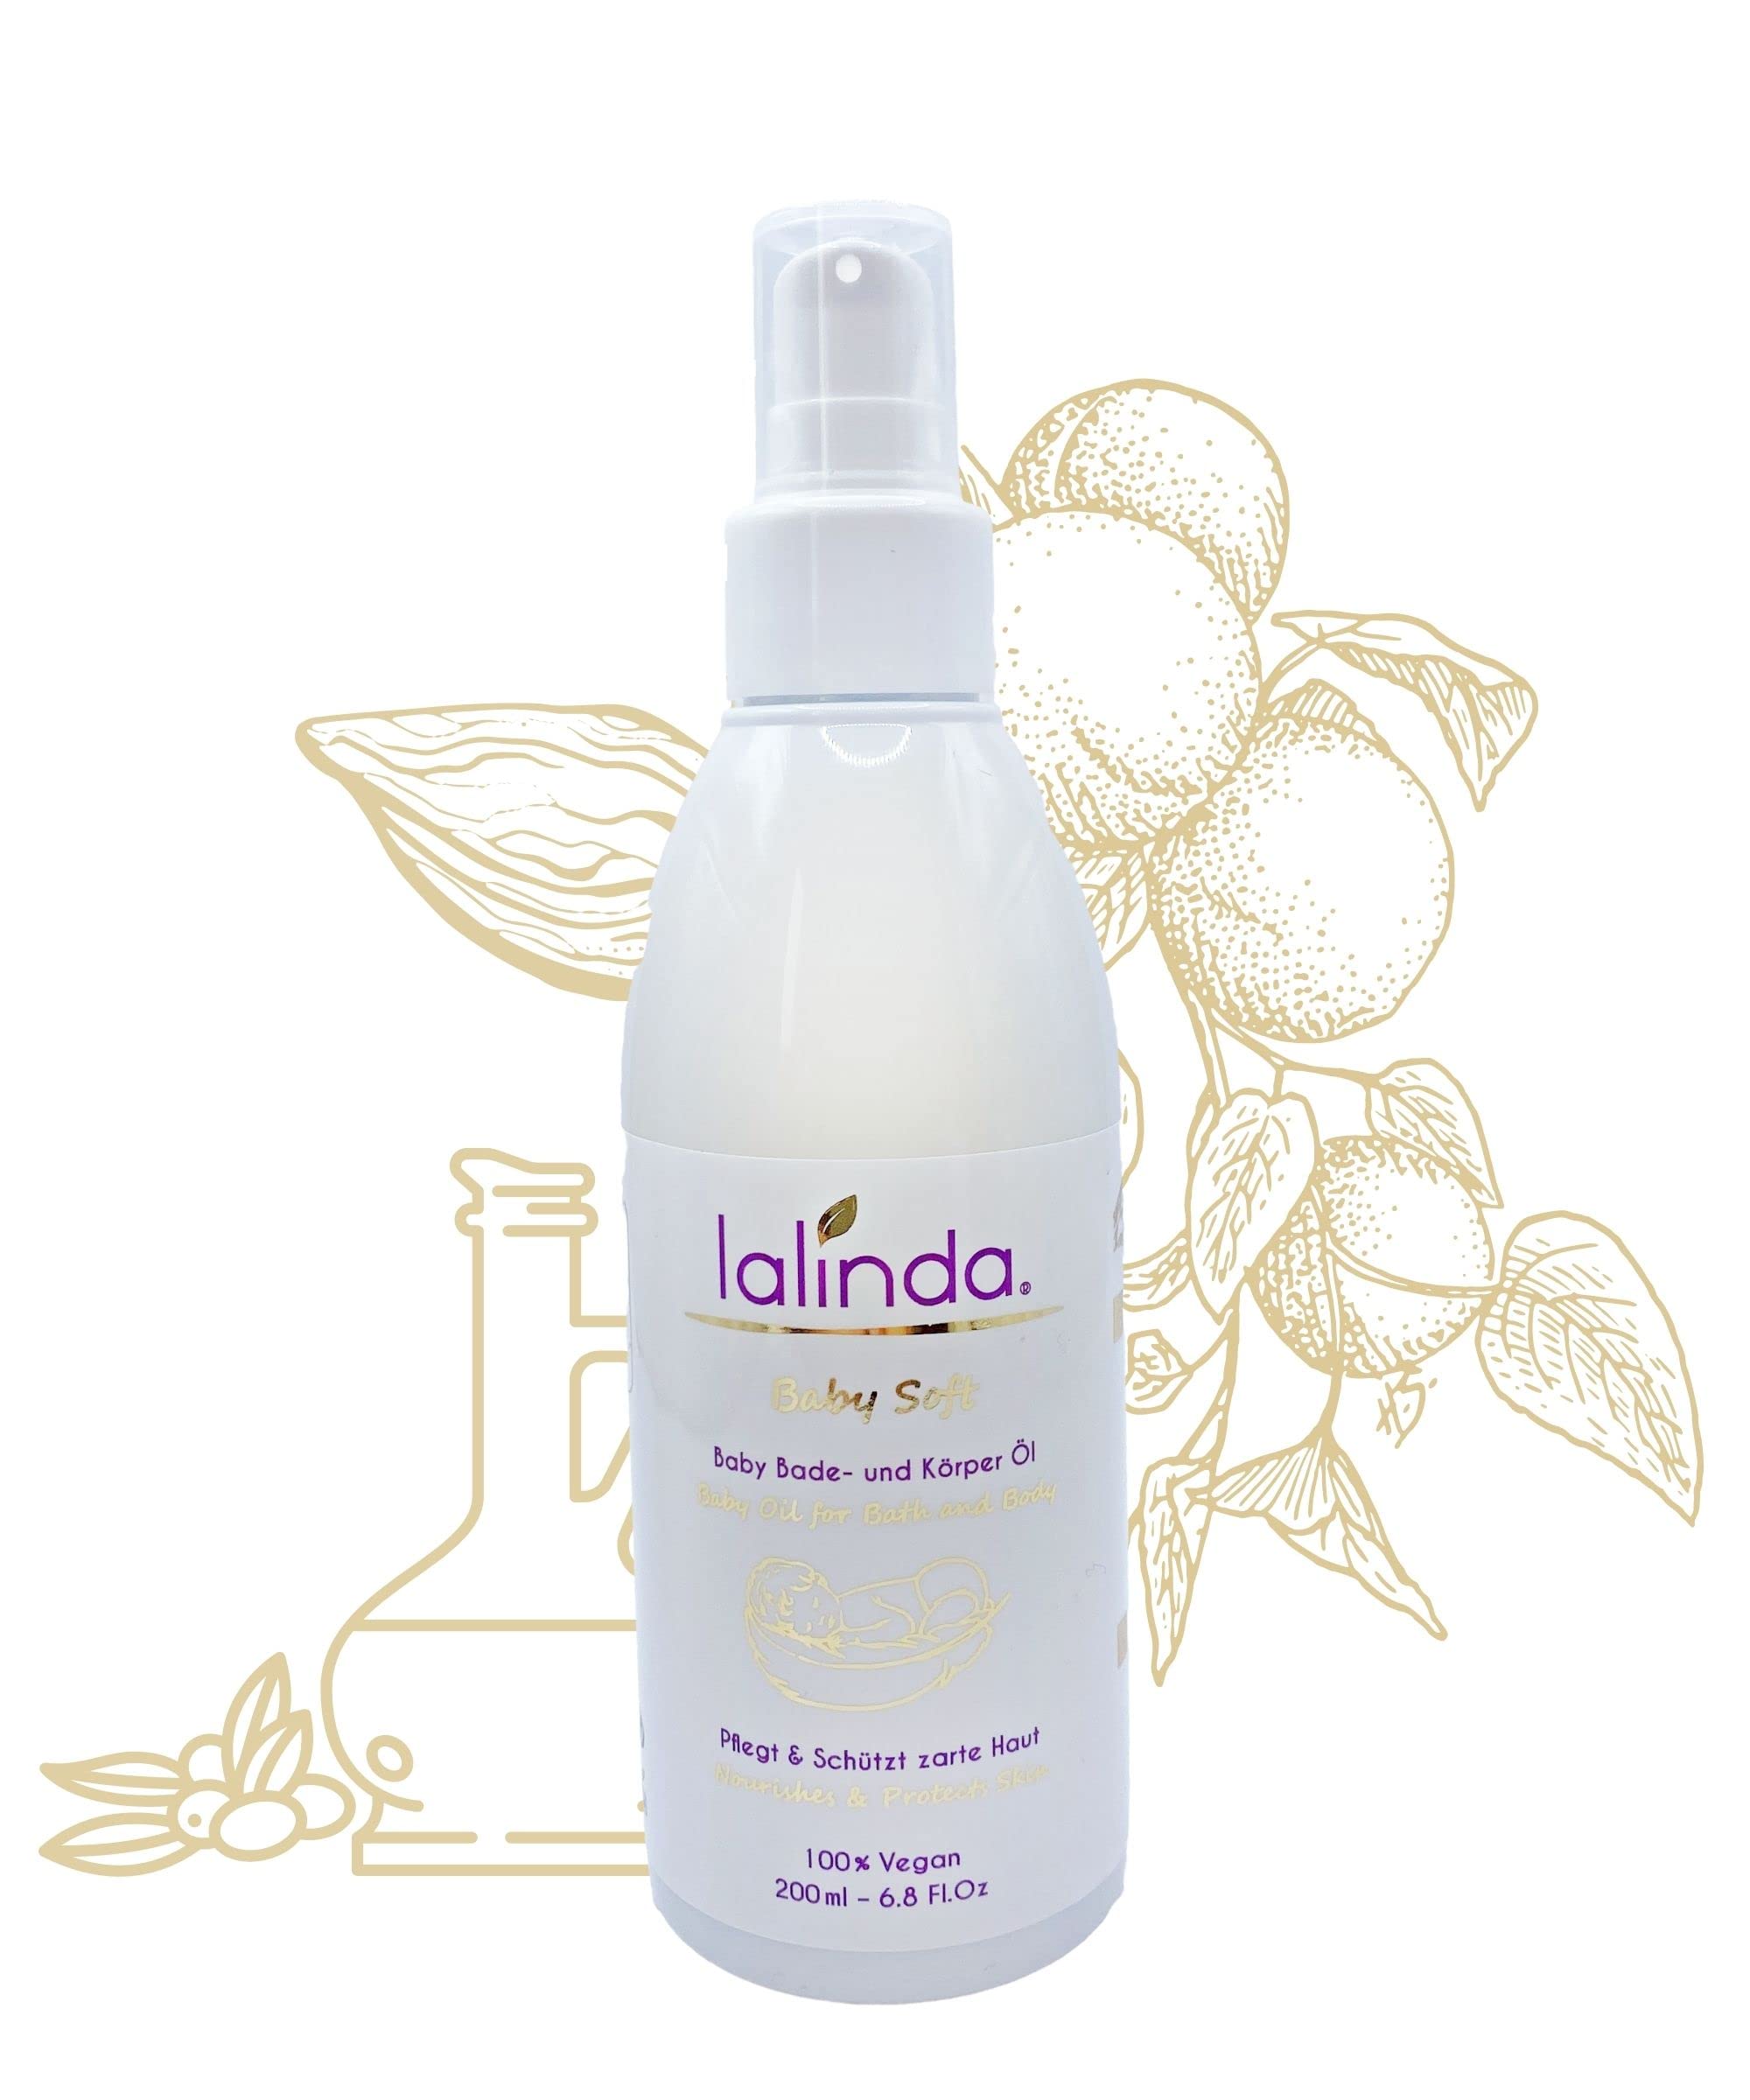 lalinda - Baby Bade- und Körperöl - für sanfte Reinigung und Body-Massage von sensitiver Babyhaut, 100% Naturöle, Vegan, OHNE Duft, in RECYCLING Pump-Flasche 200 ml